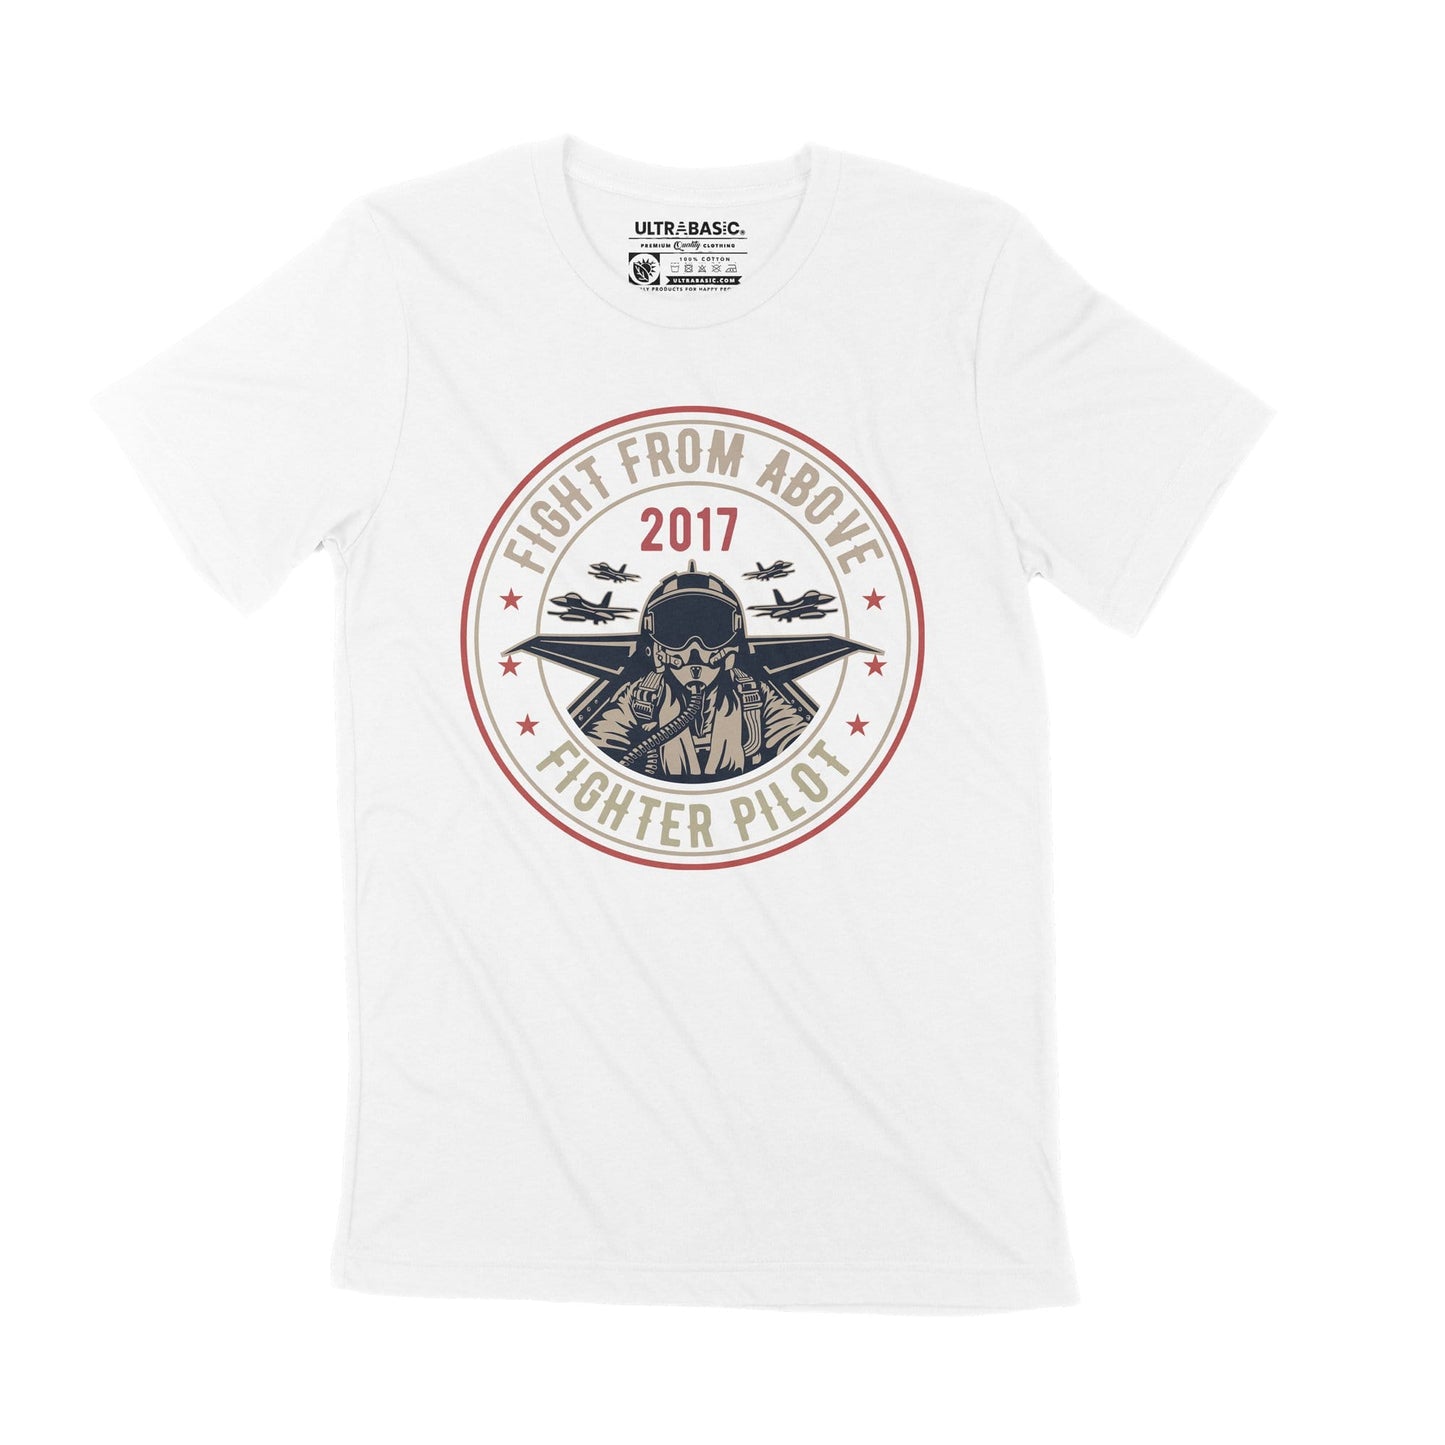 ULTRABASIC Men's T-Shirt Fight from Above - Fighter Pilot Since 2017 - Warrior Tee Shirt